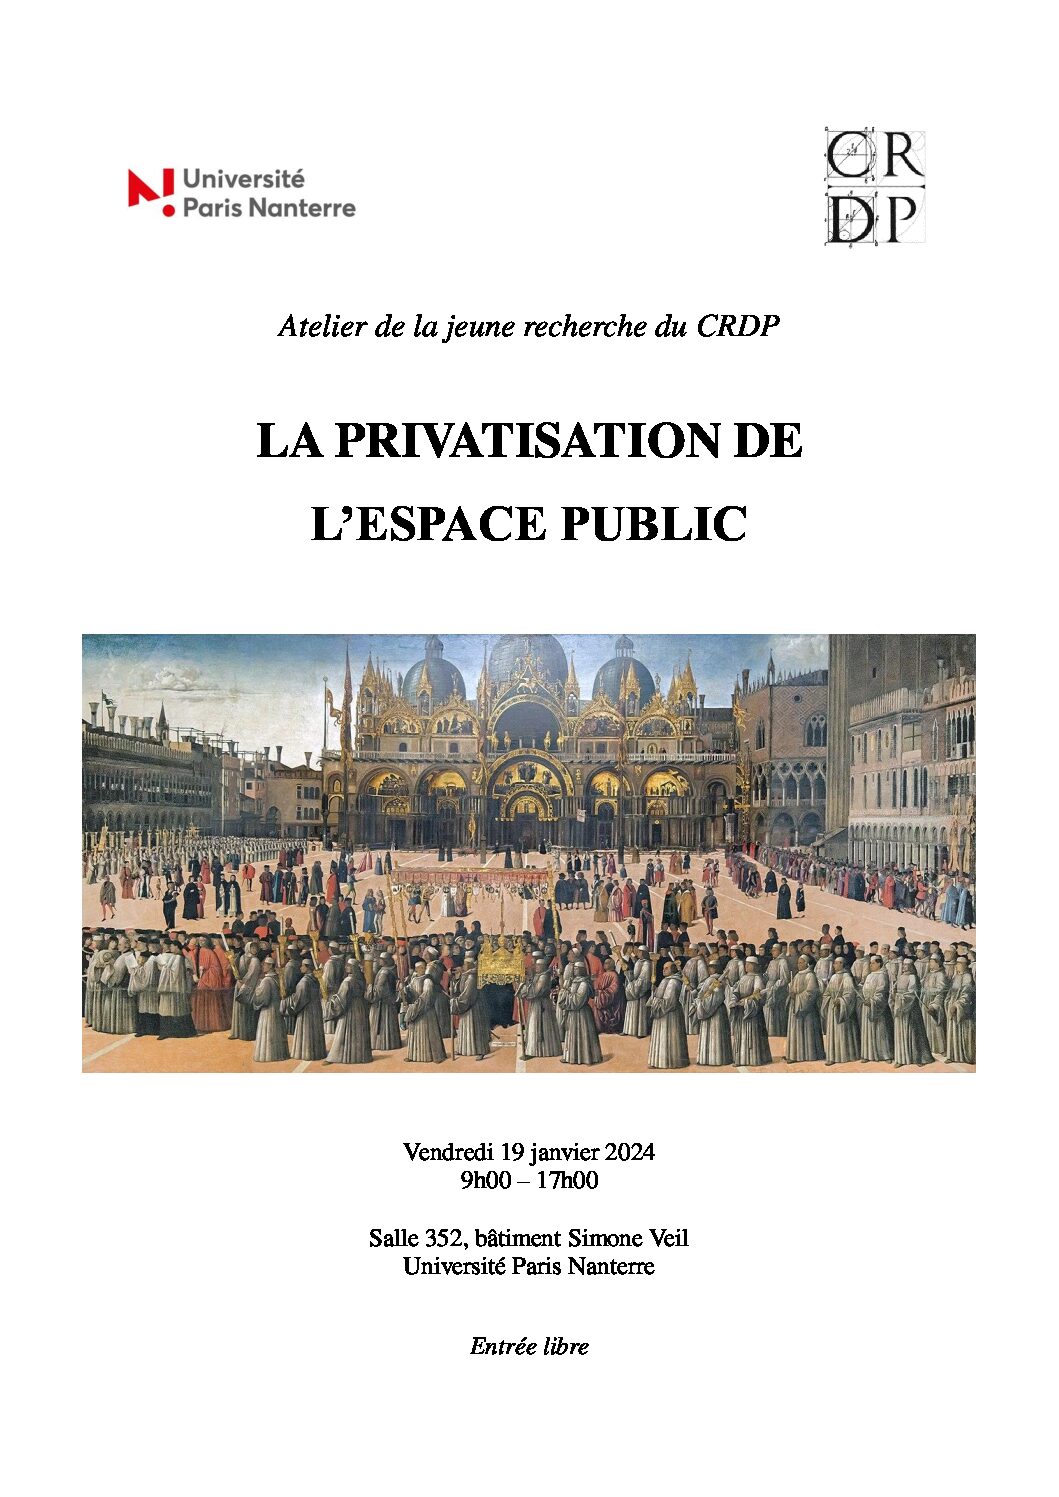 Atelier de la jeune recherche : La privatisation de l’espace public